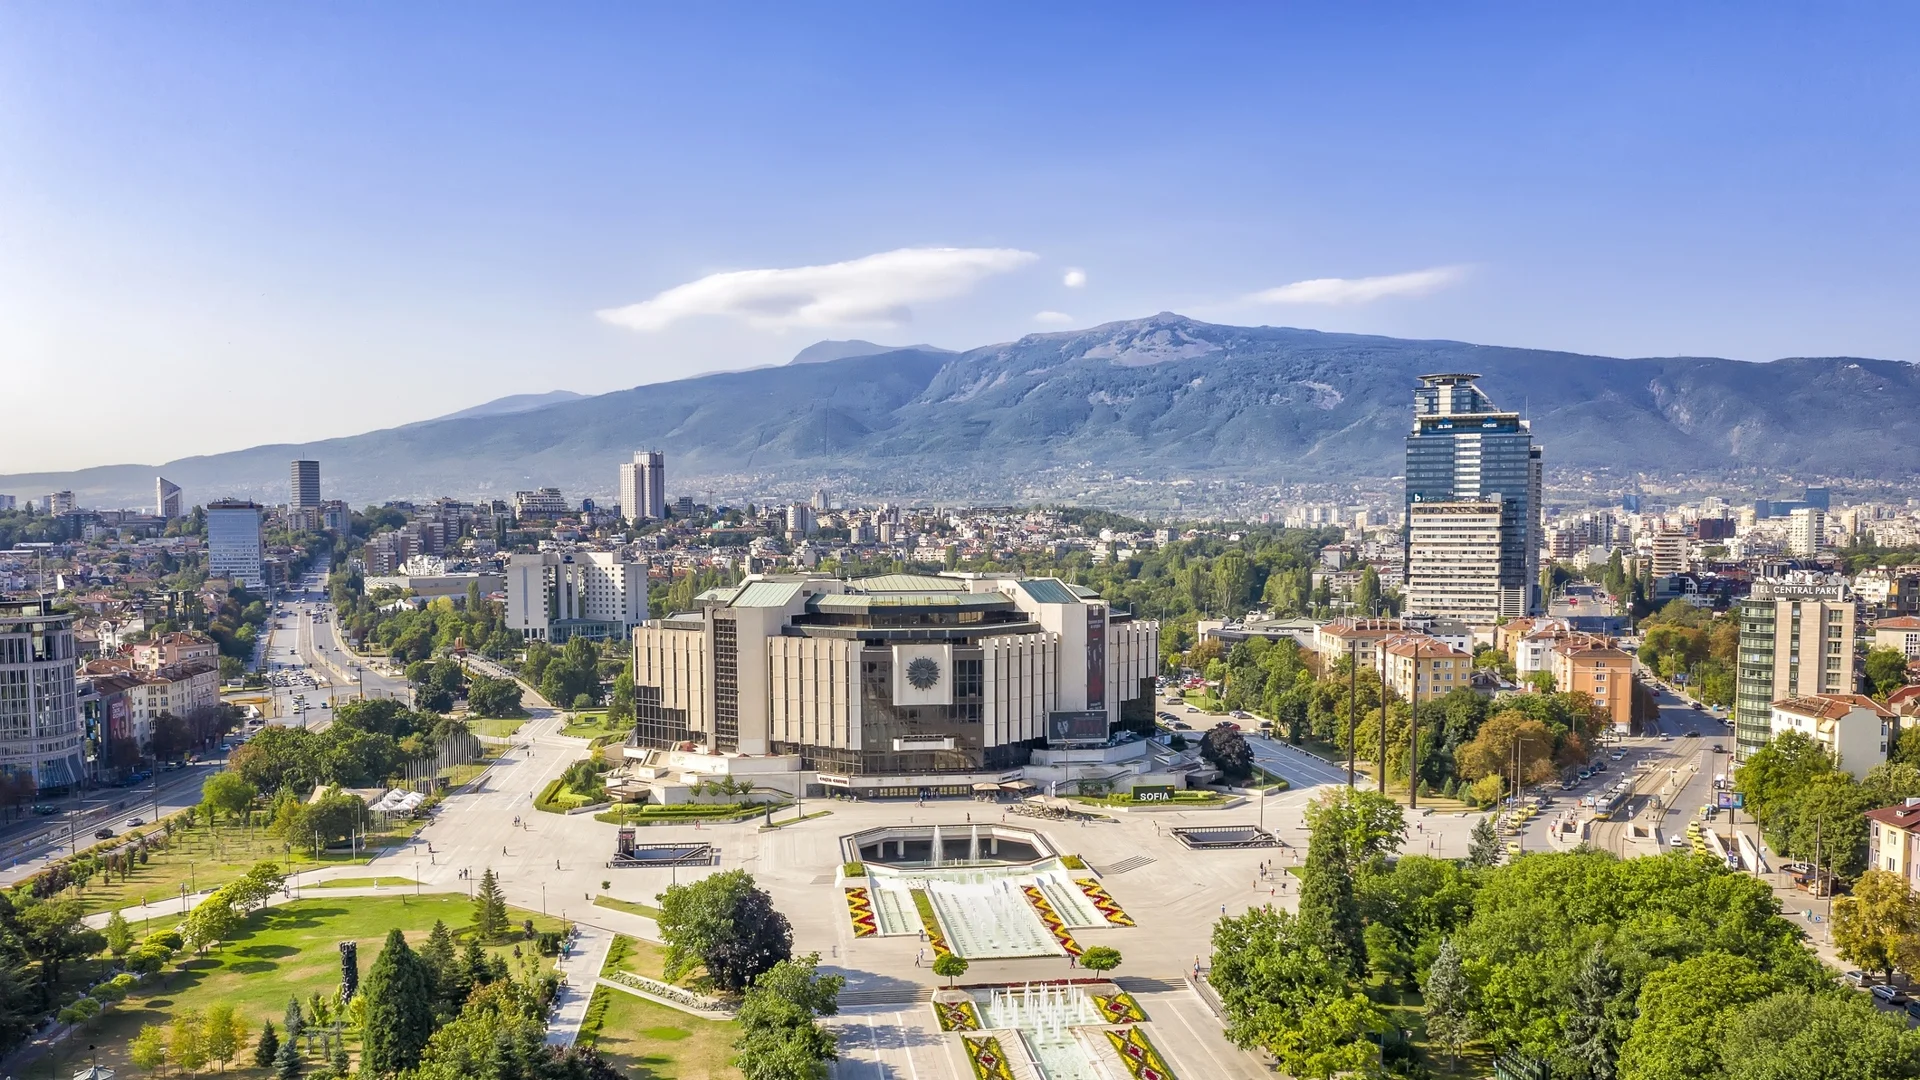 Визия за Зелена София - възможно ли е столицата да подобри екологичните си показатели